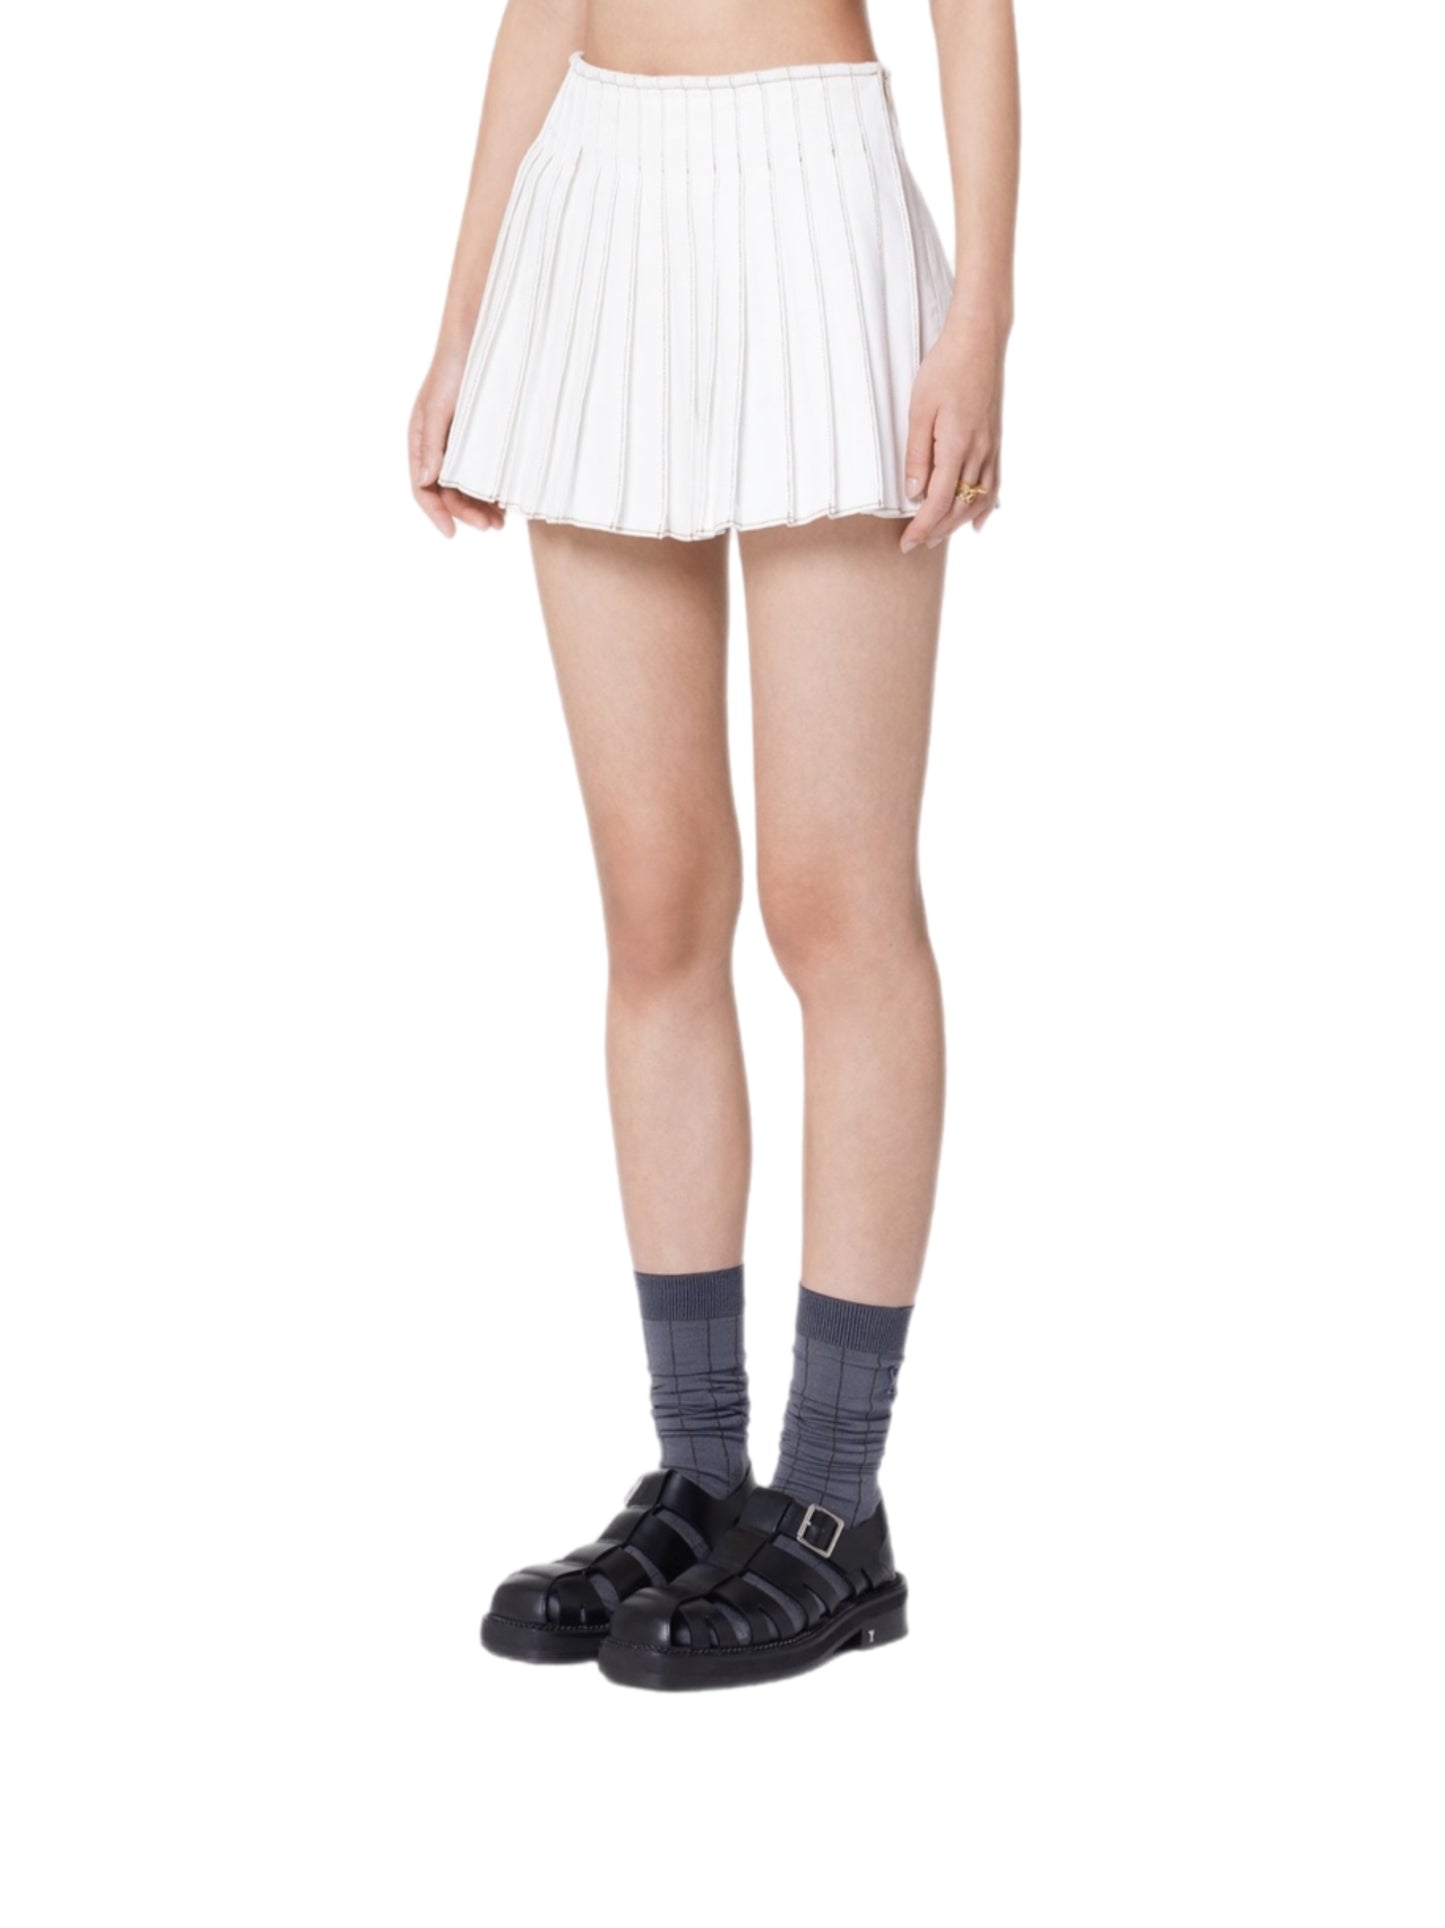 Short Pleated Skirt FSK010.CO0033